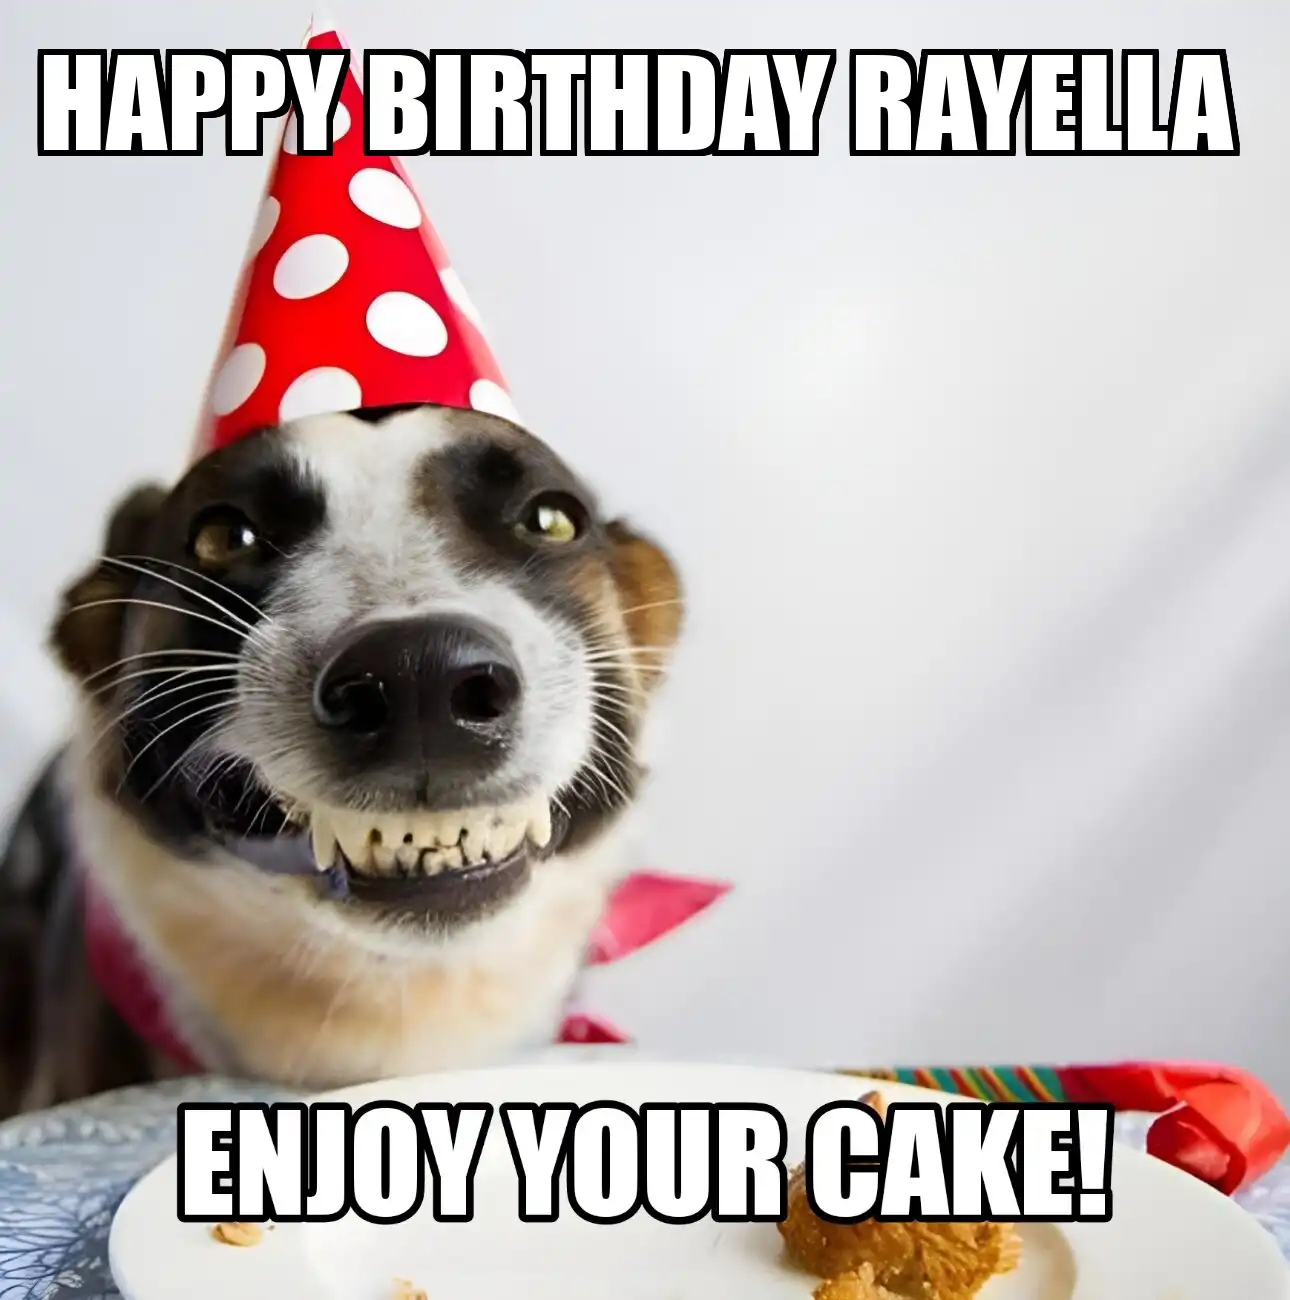 Happy Birthday Rayella Enjoy Your Cake Dog Meme